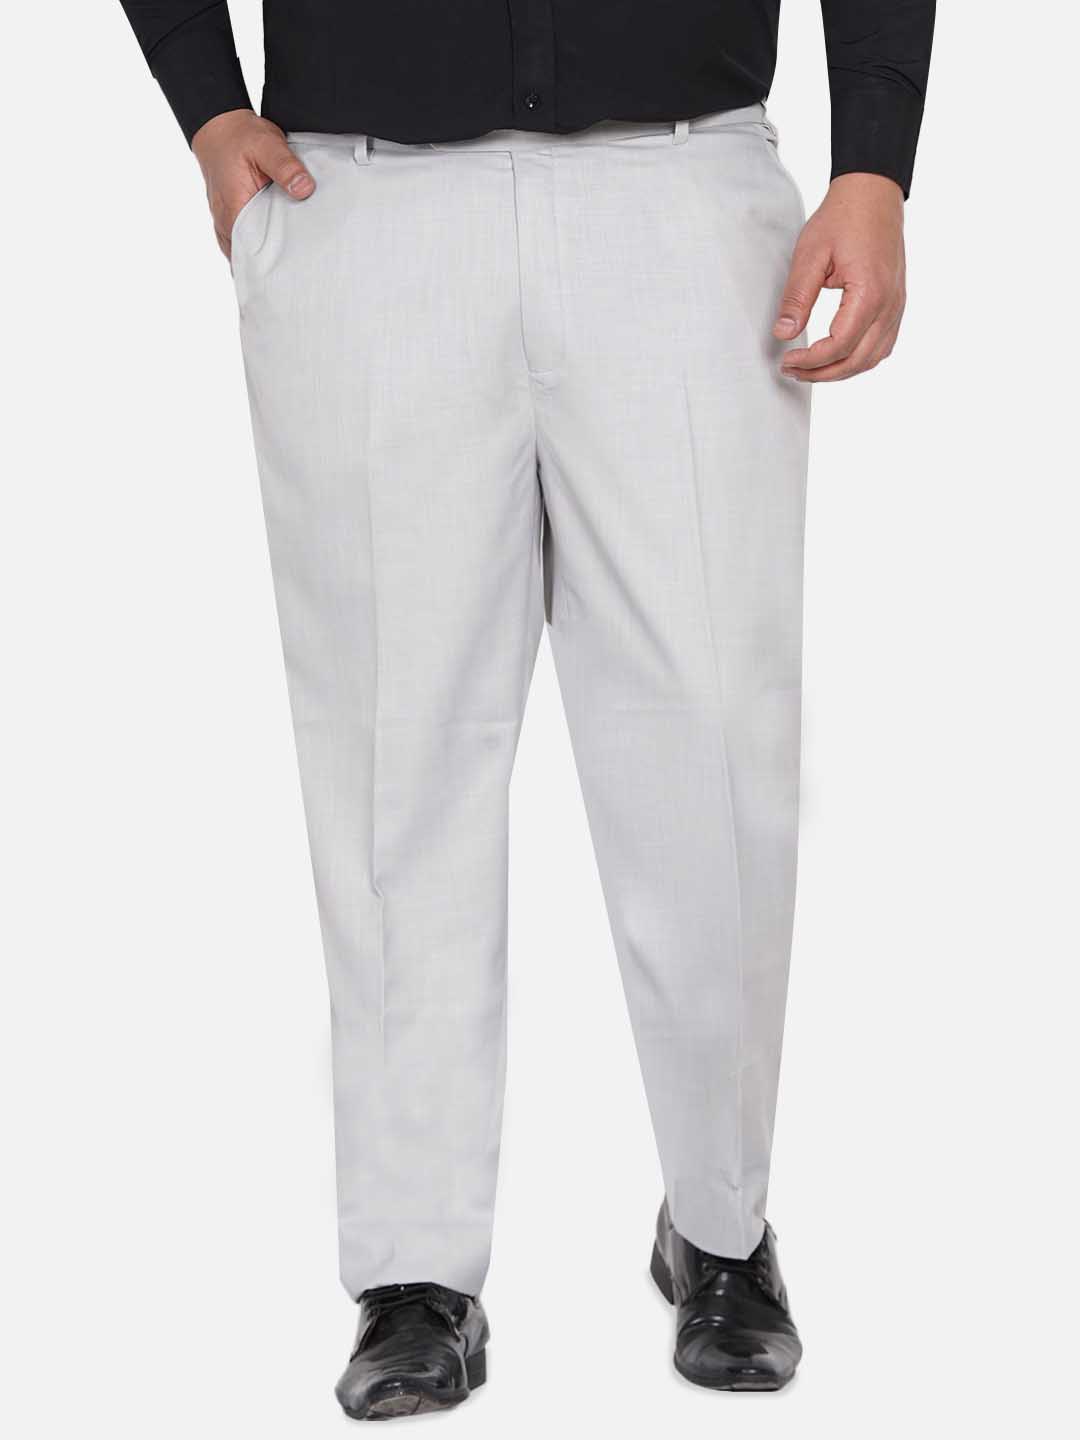 bottomwear/trousers/JPTR22010C/jptr22010c-1.jpg